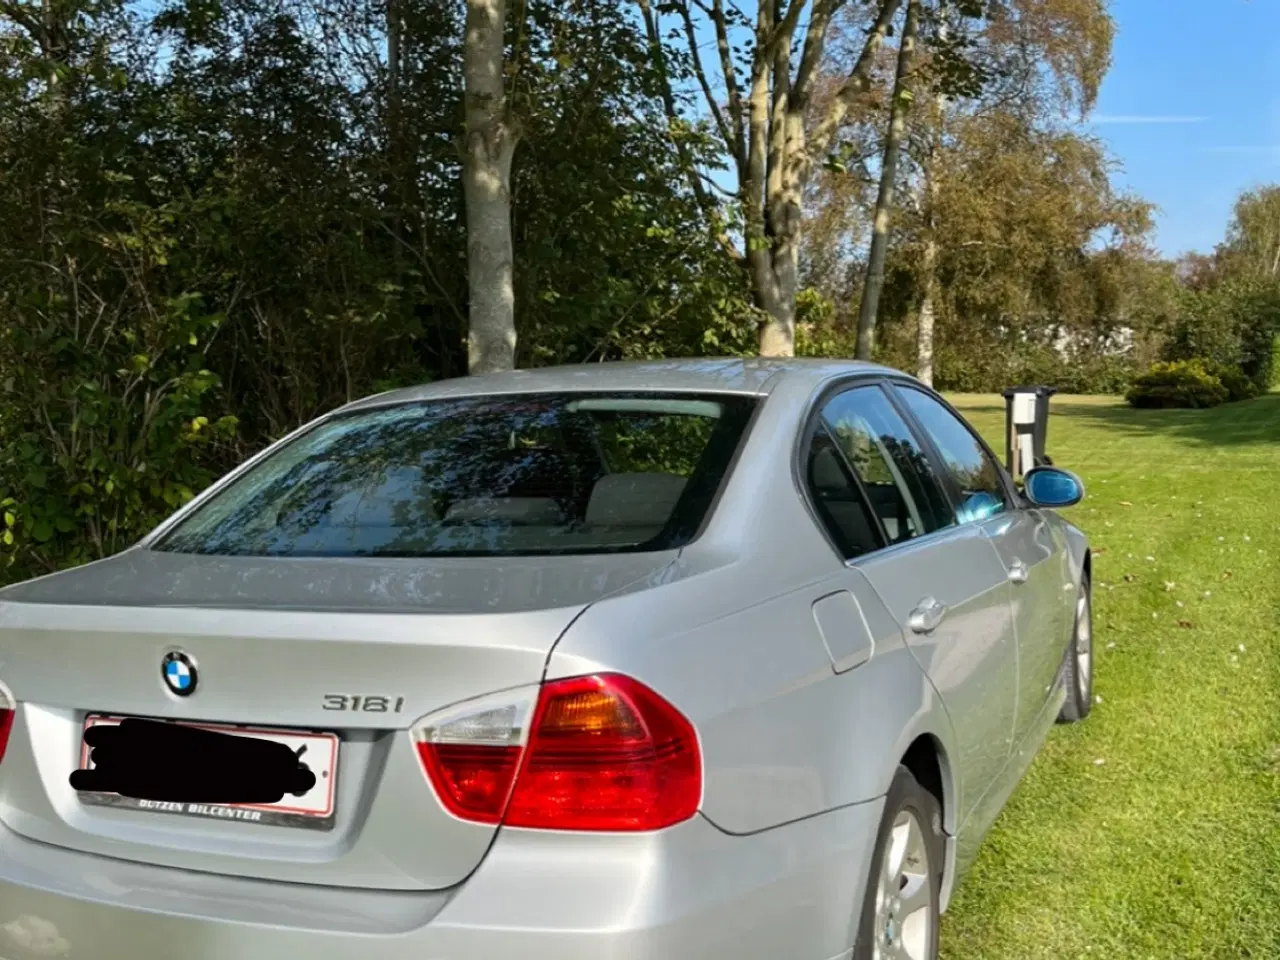 Billede 5 - BMW 318i benzin 2,0 sedan fra 2007